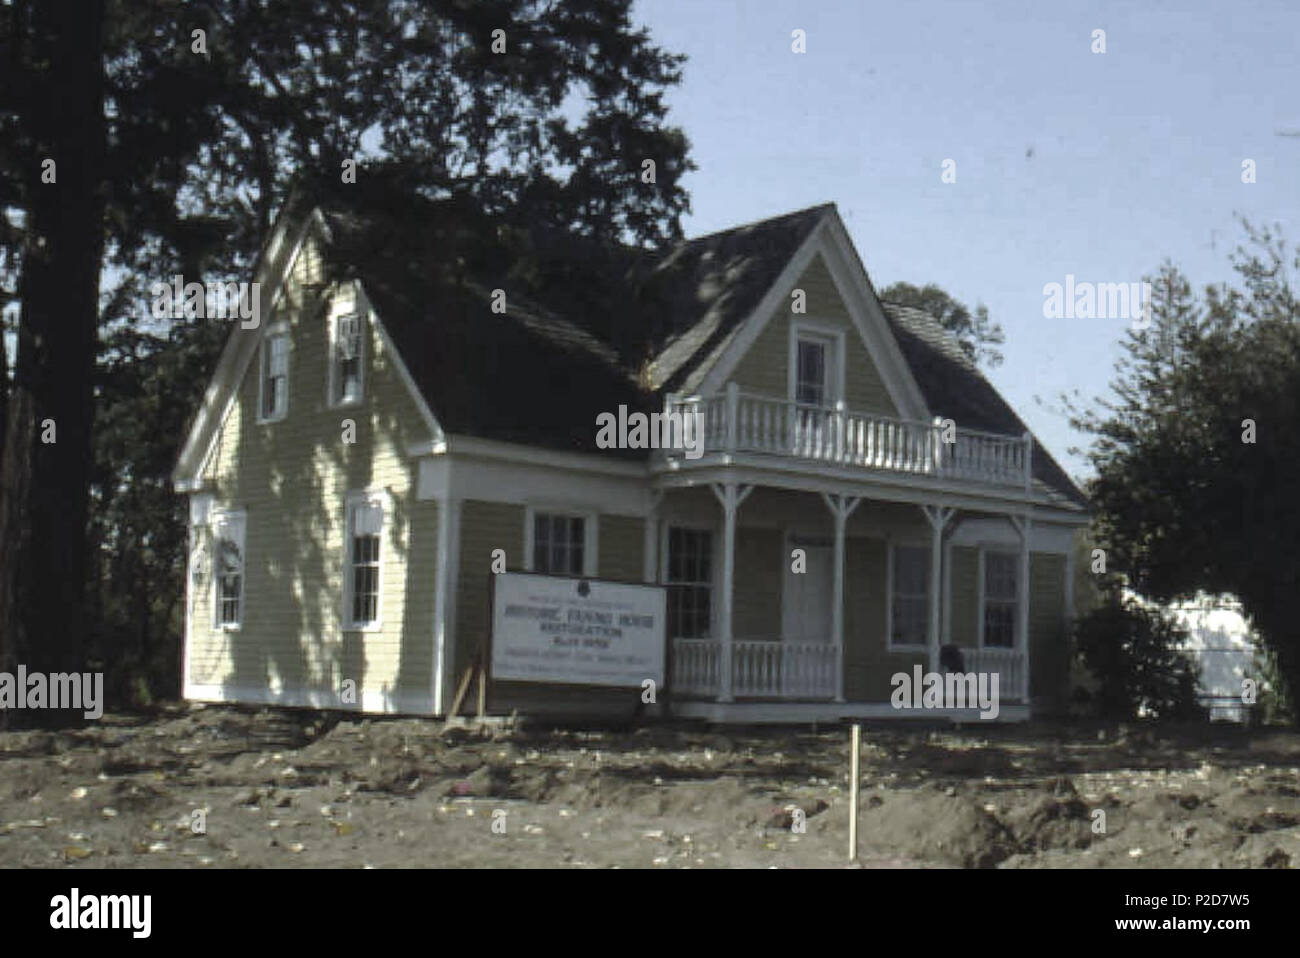 . Inglés: Fanno House. Imágenes históricas de Beaverton, Oregon. . Fotógrafo desconocido 19 Fanno Casa Histórica de Beaverton, Oregon (Galería de fotos) (299) Foto de stock